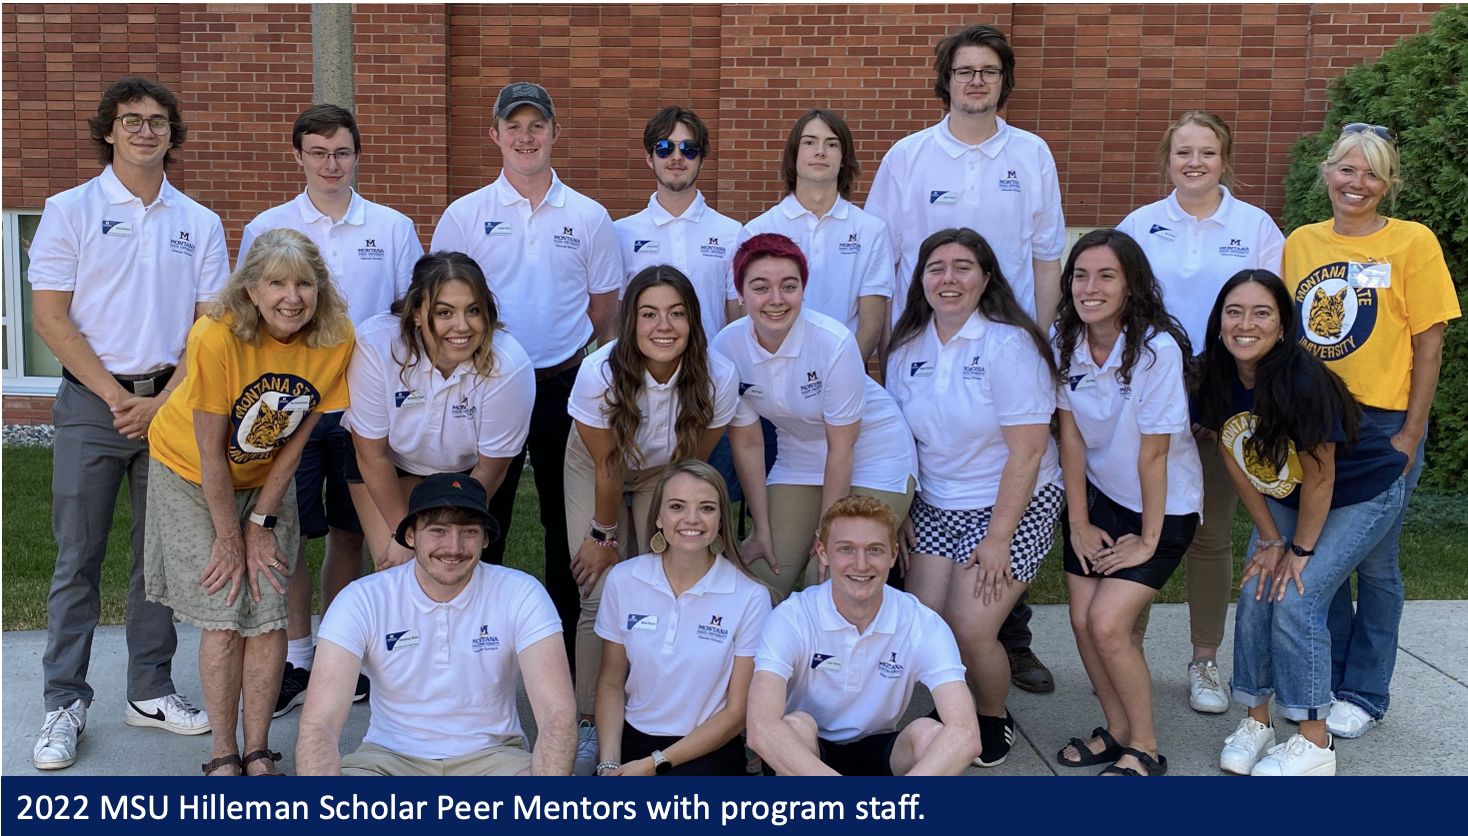 2022 MSU Hilleman Scholar Peer Mentors with program staff.